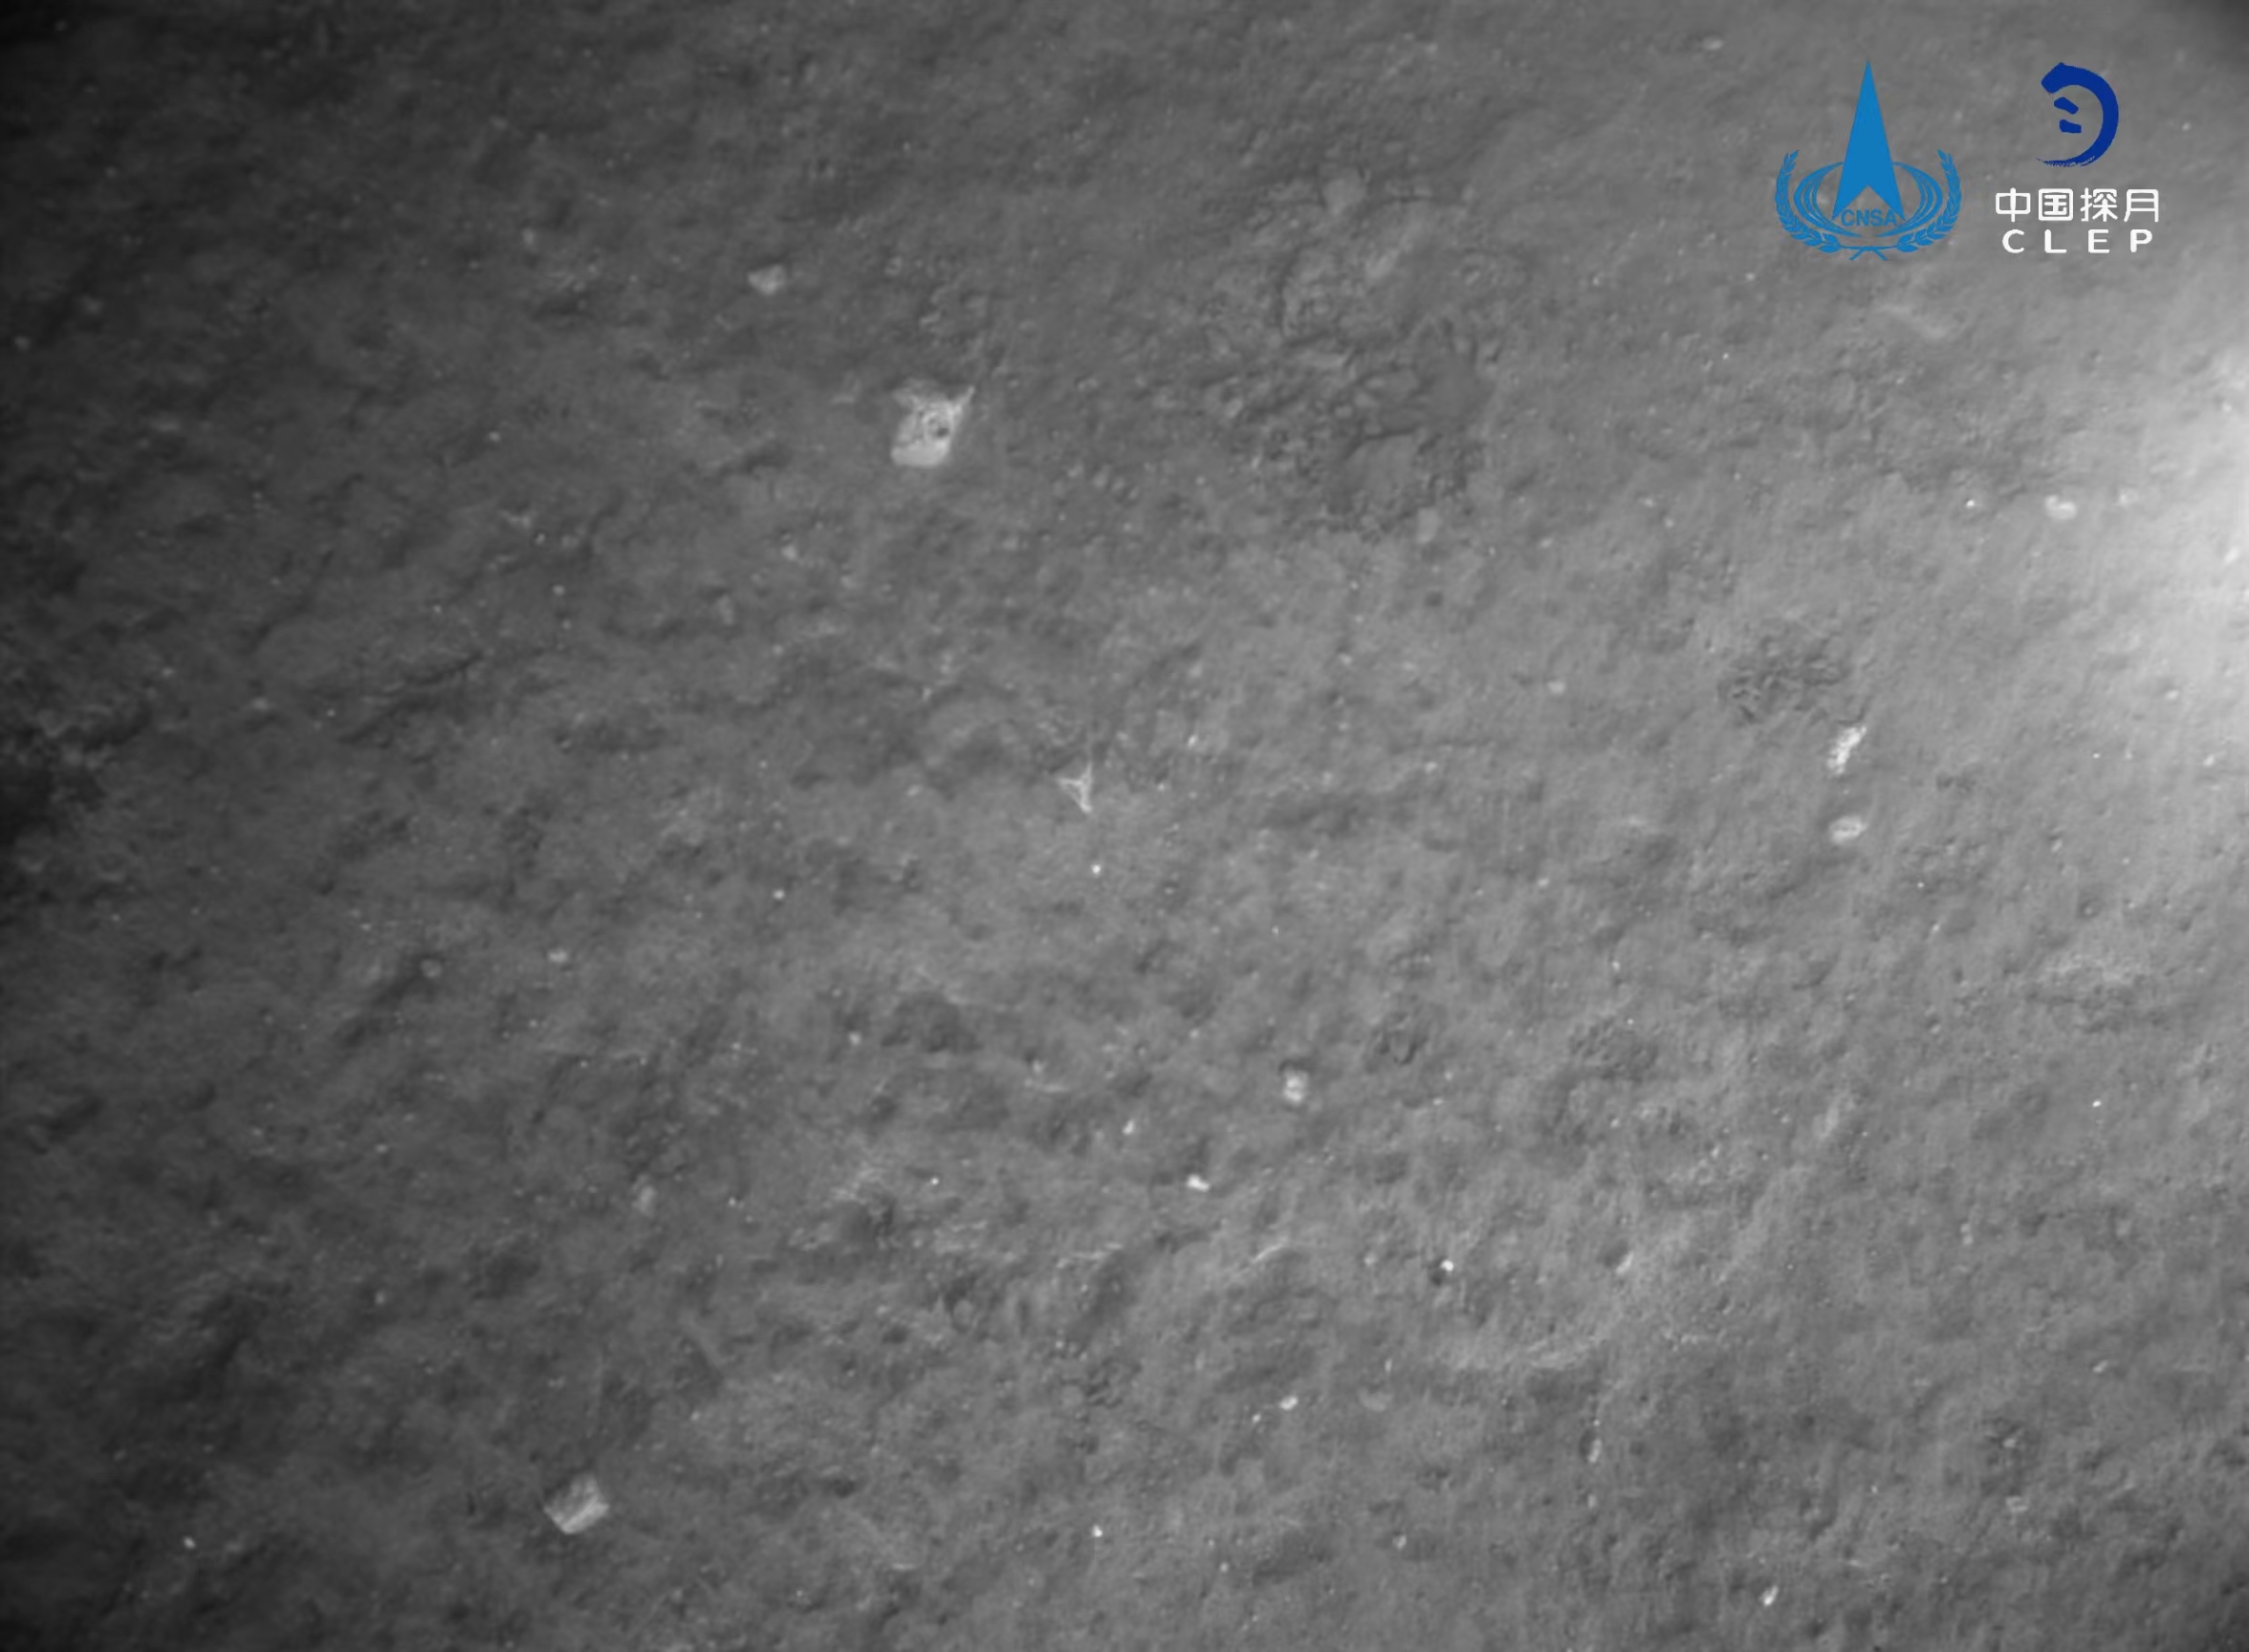 该图由降落相机在着陆器安全着陆后拍摄，图像的下方是着陆腿和着陆时冲击挤压隆起的月壤。图像显示着陆器底部相对平坦	，